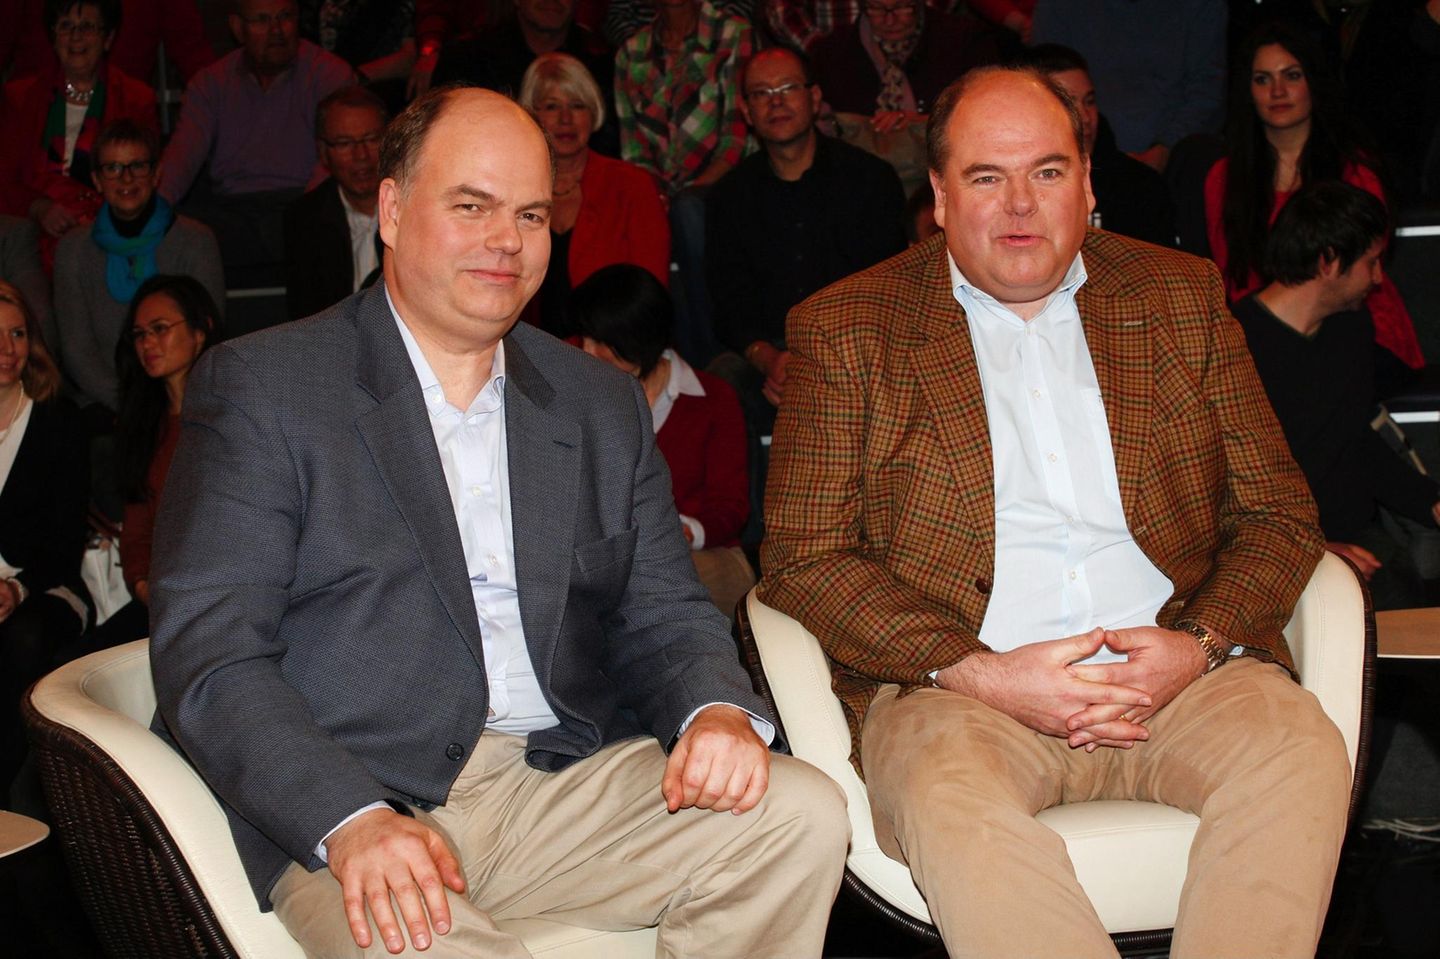 Peter Kohl (l.) und Walter Kohl, die Söhne des verstorbenen Alt-Bundeskanzlers Helmut Kohl